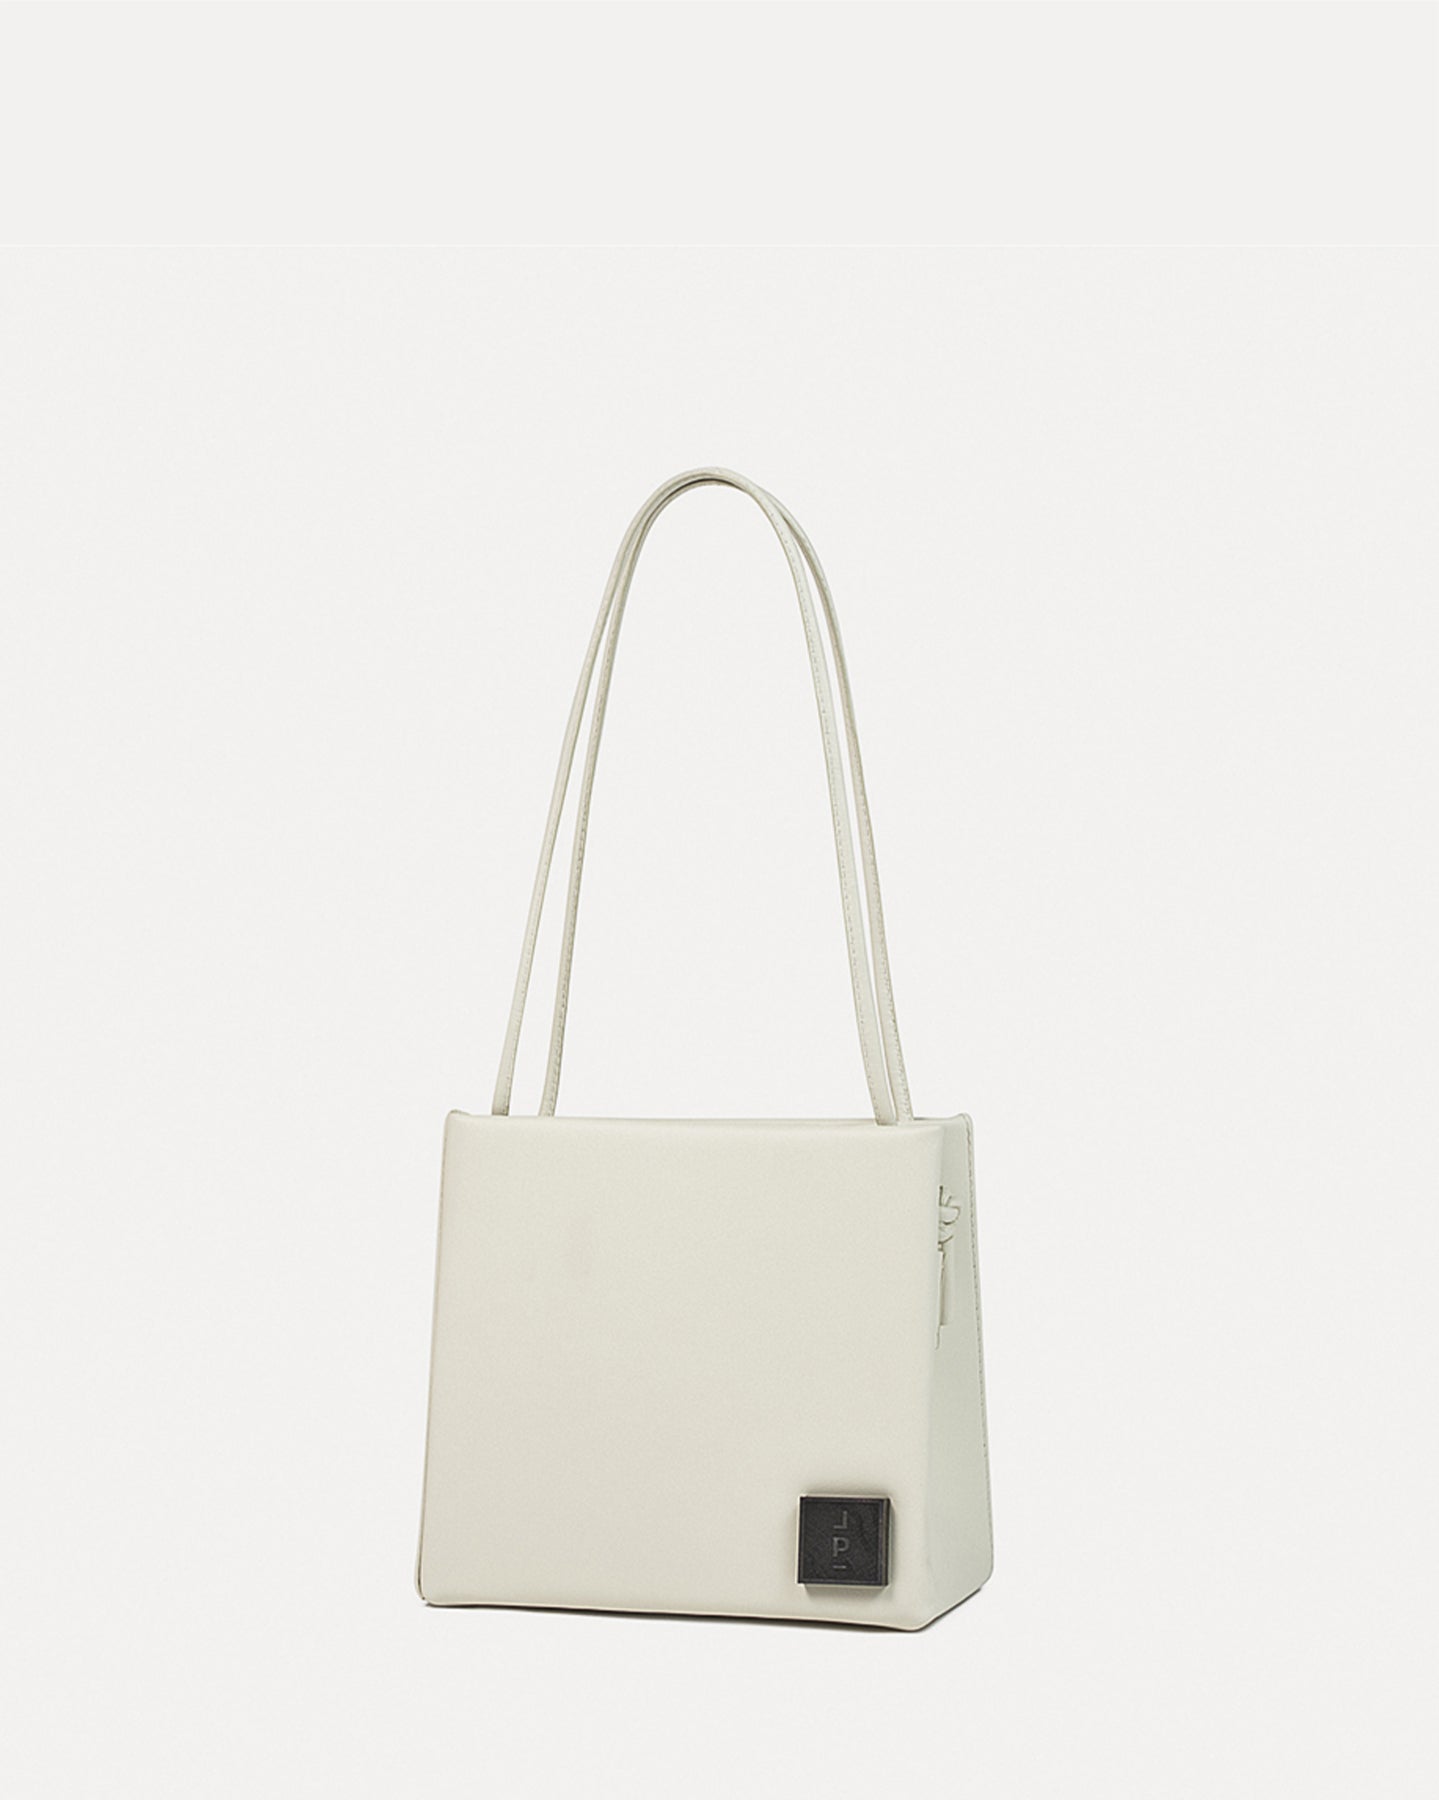 LONA PRIST l Square Bag in Off-white